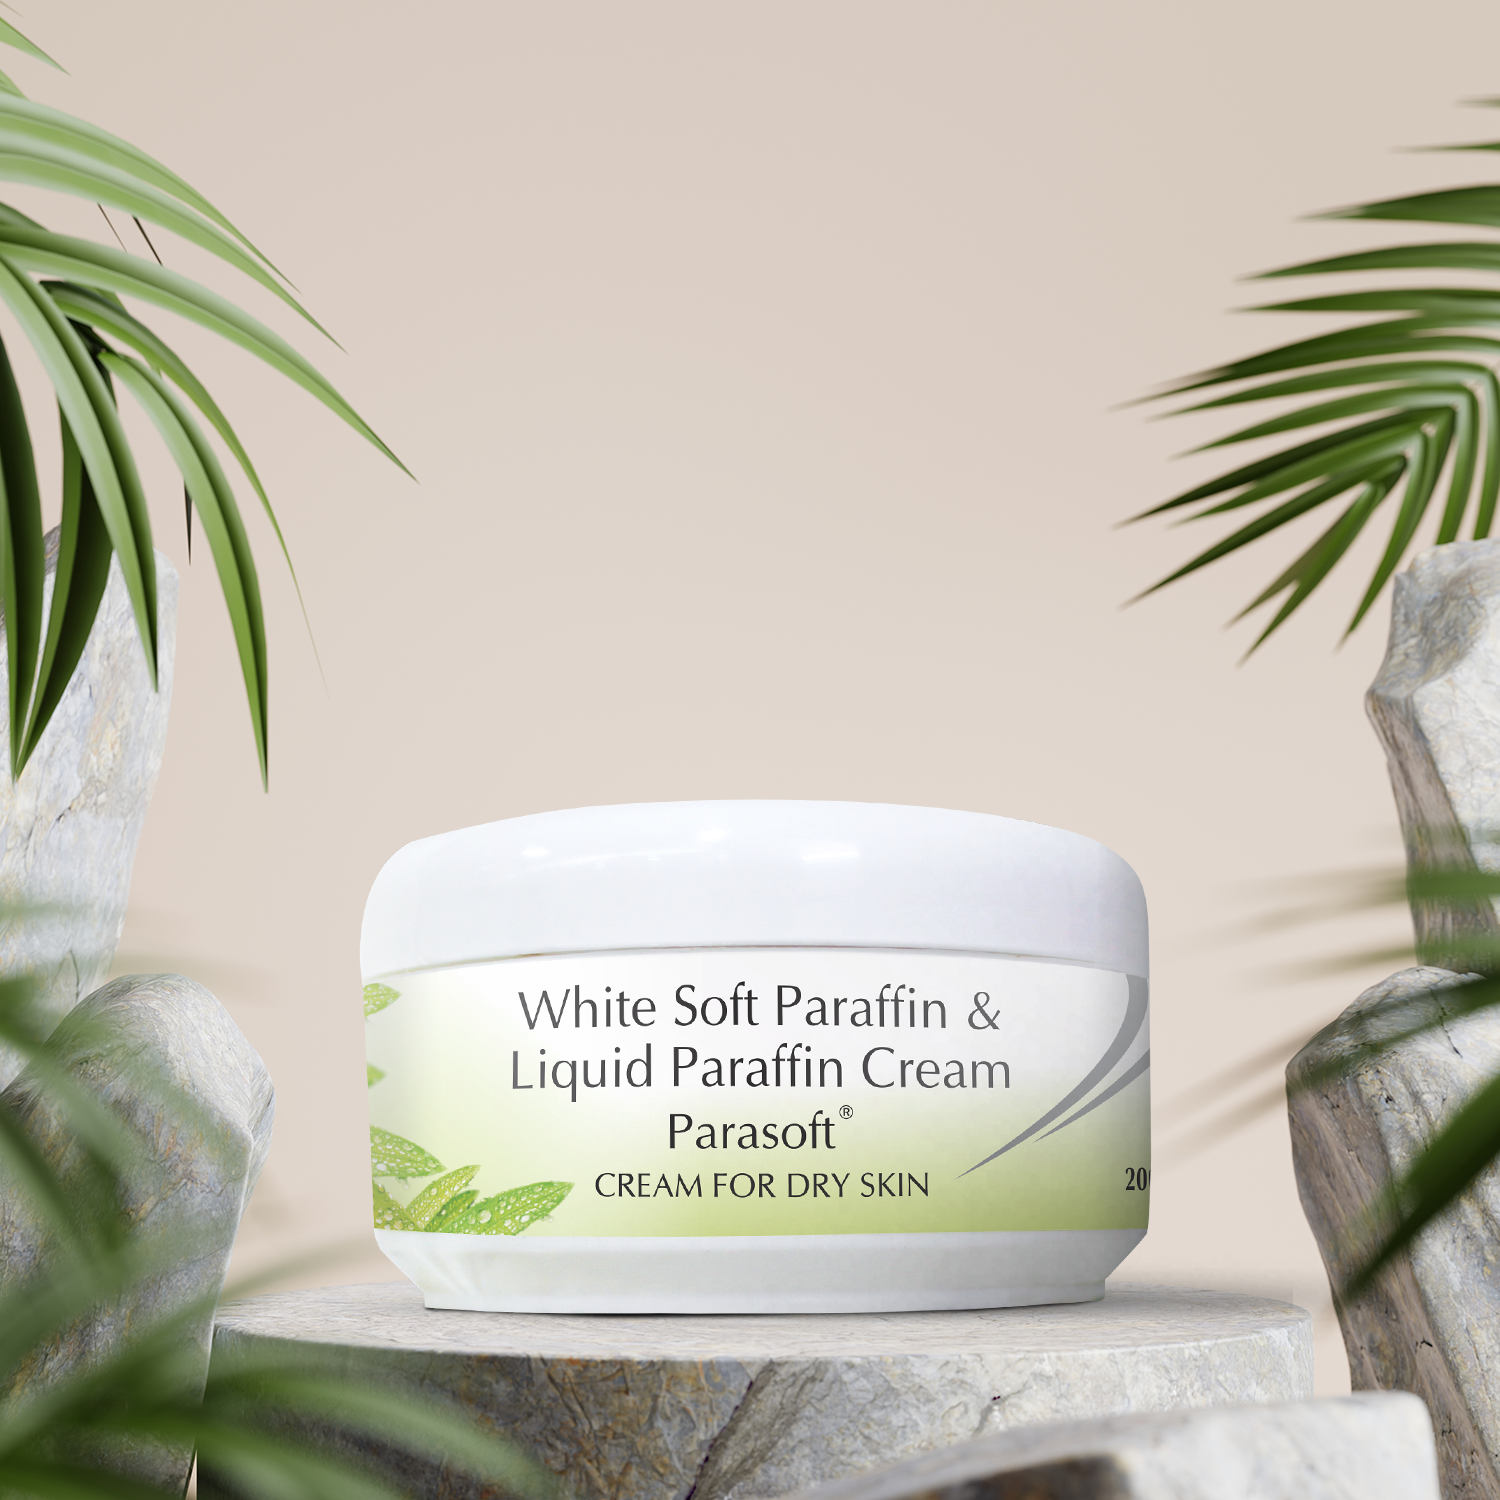 Salve Parasoft Dry Skin Cream, 7.05 Oz